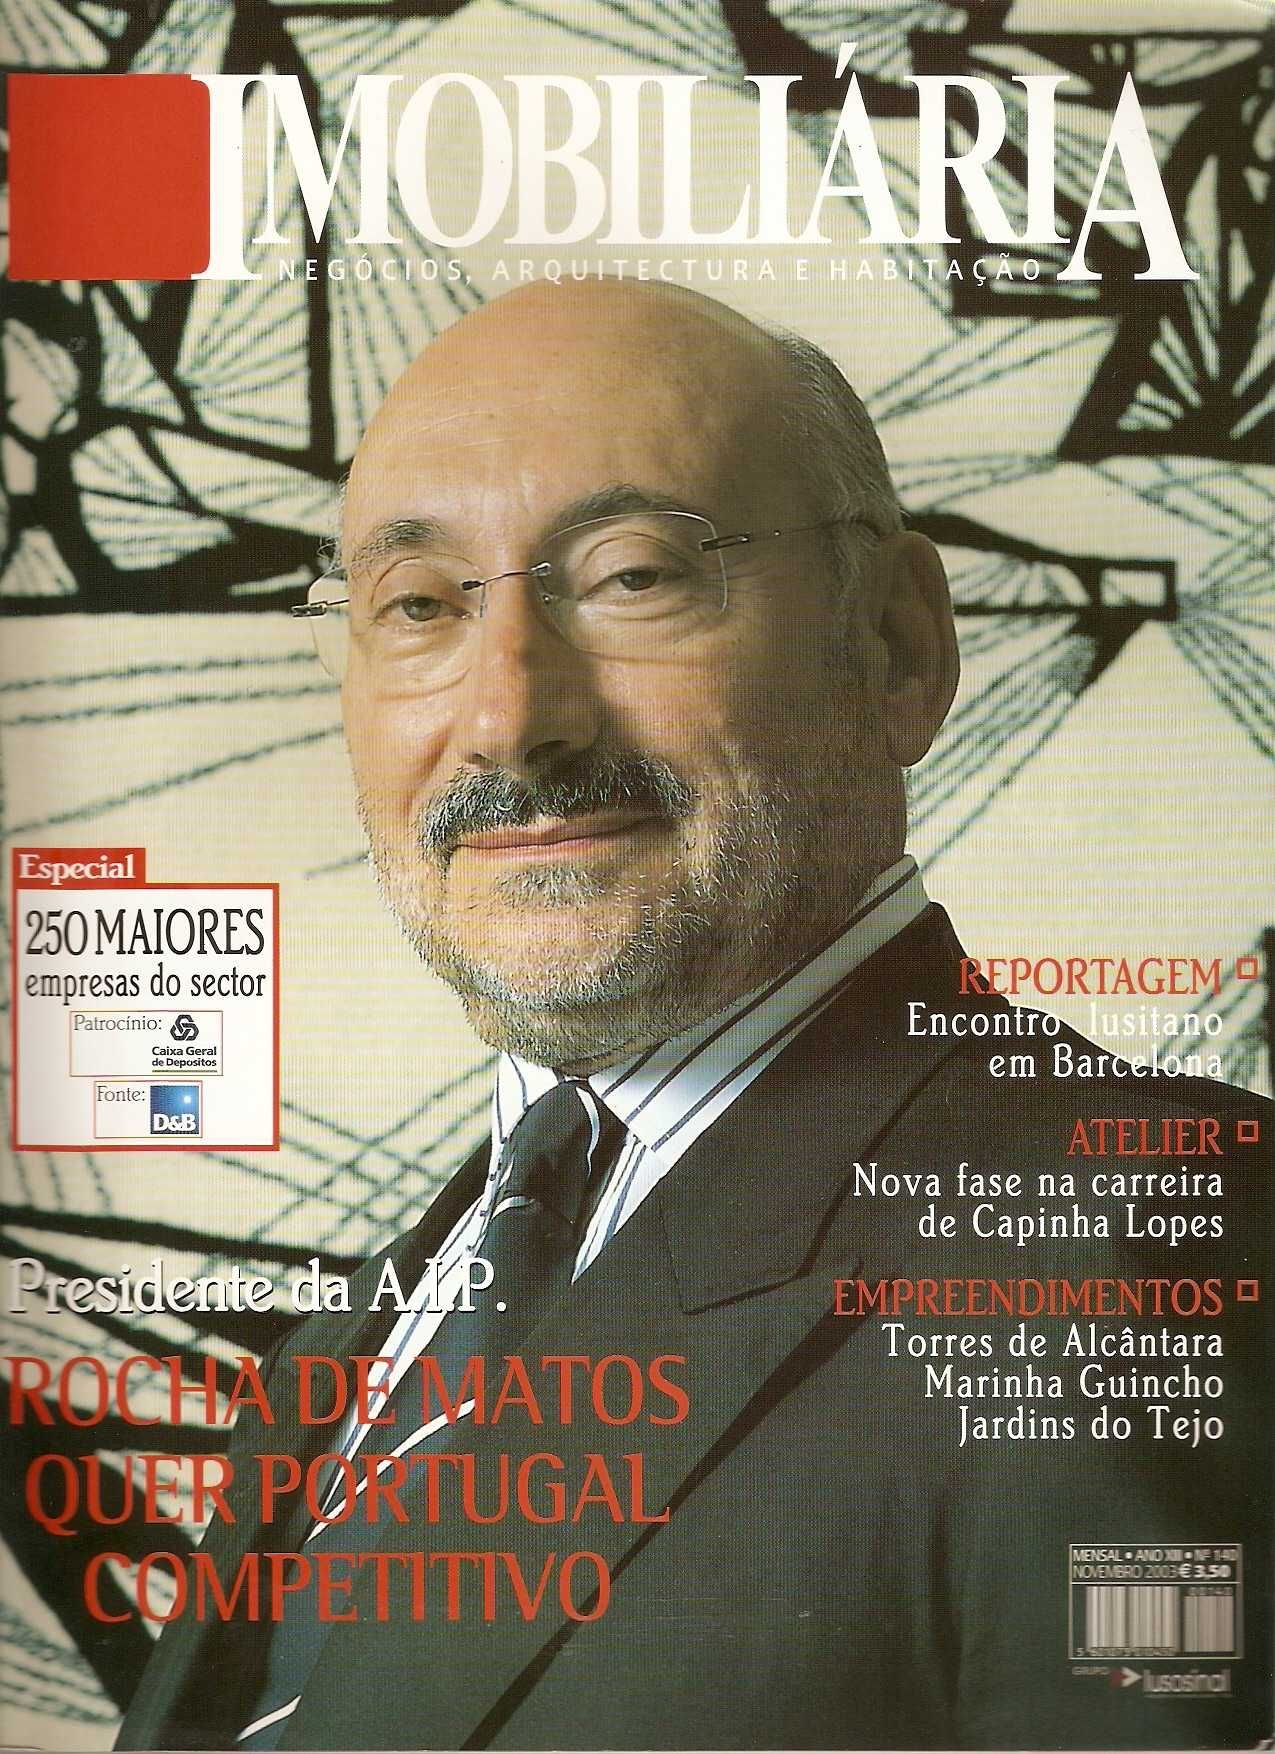 Rocha de Matos na capa de revista Imobiliária 2003